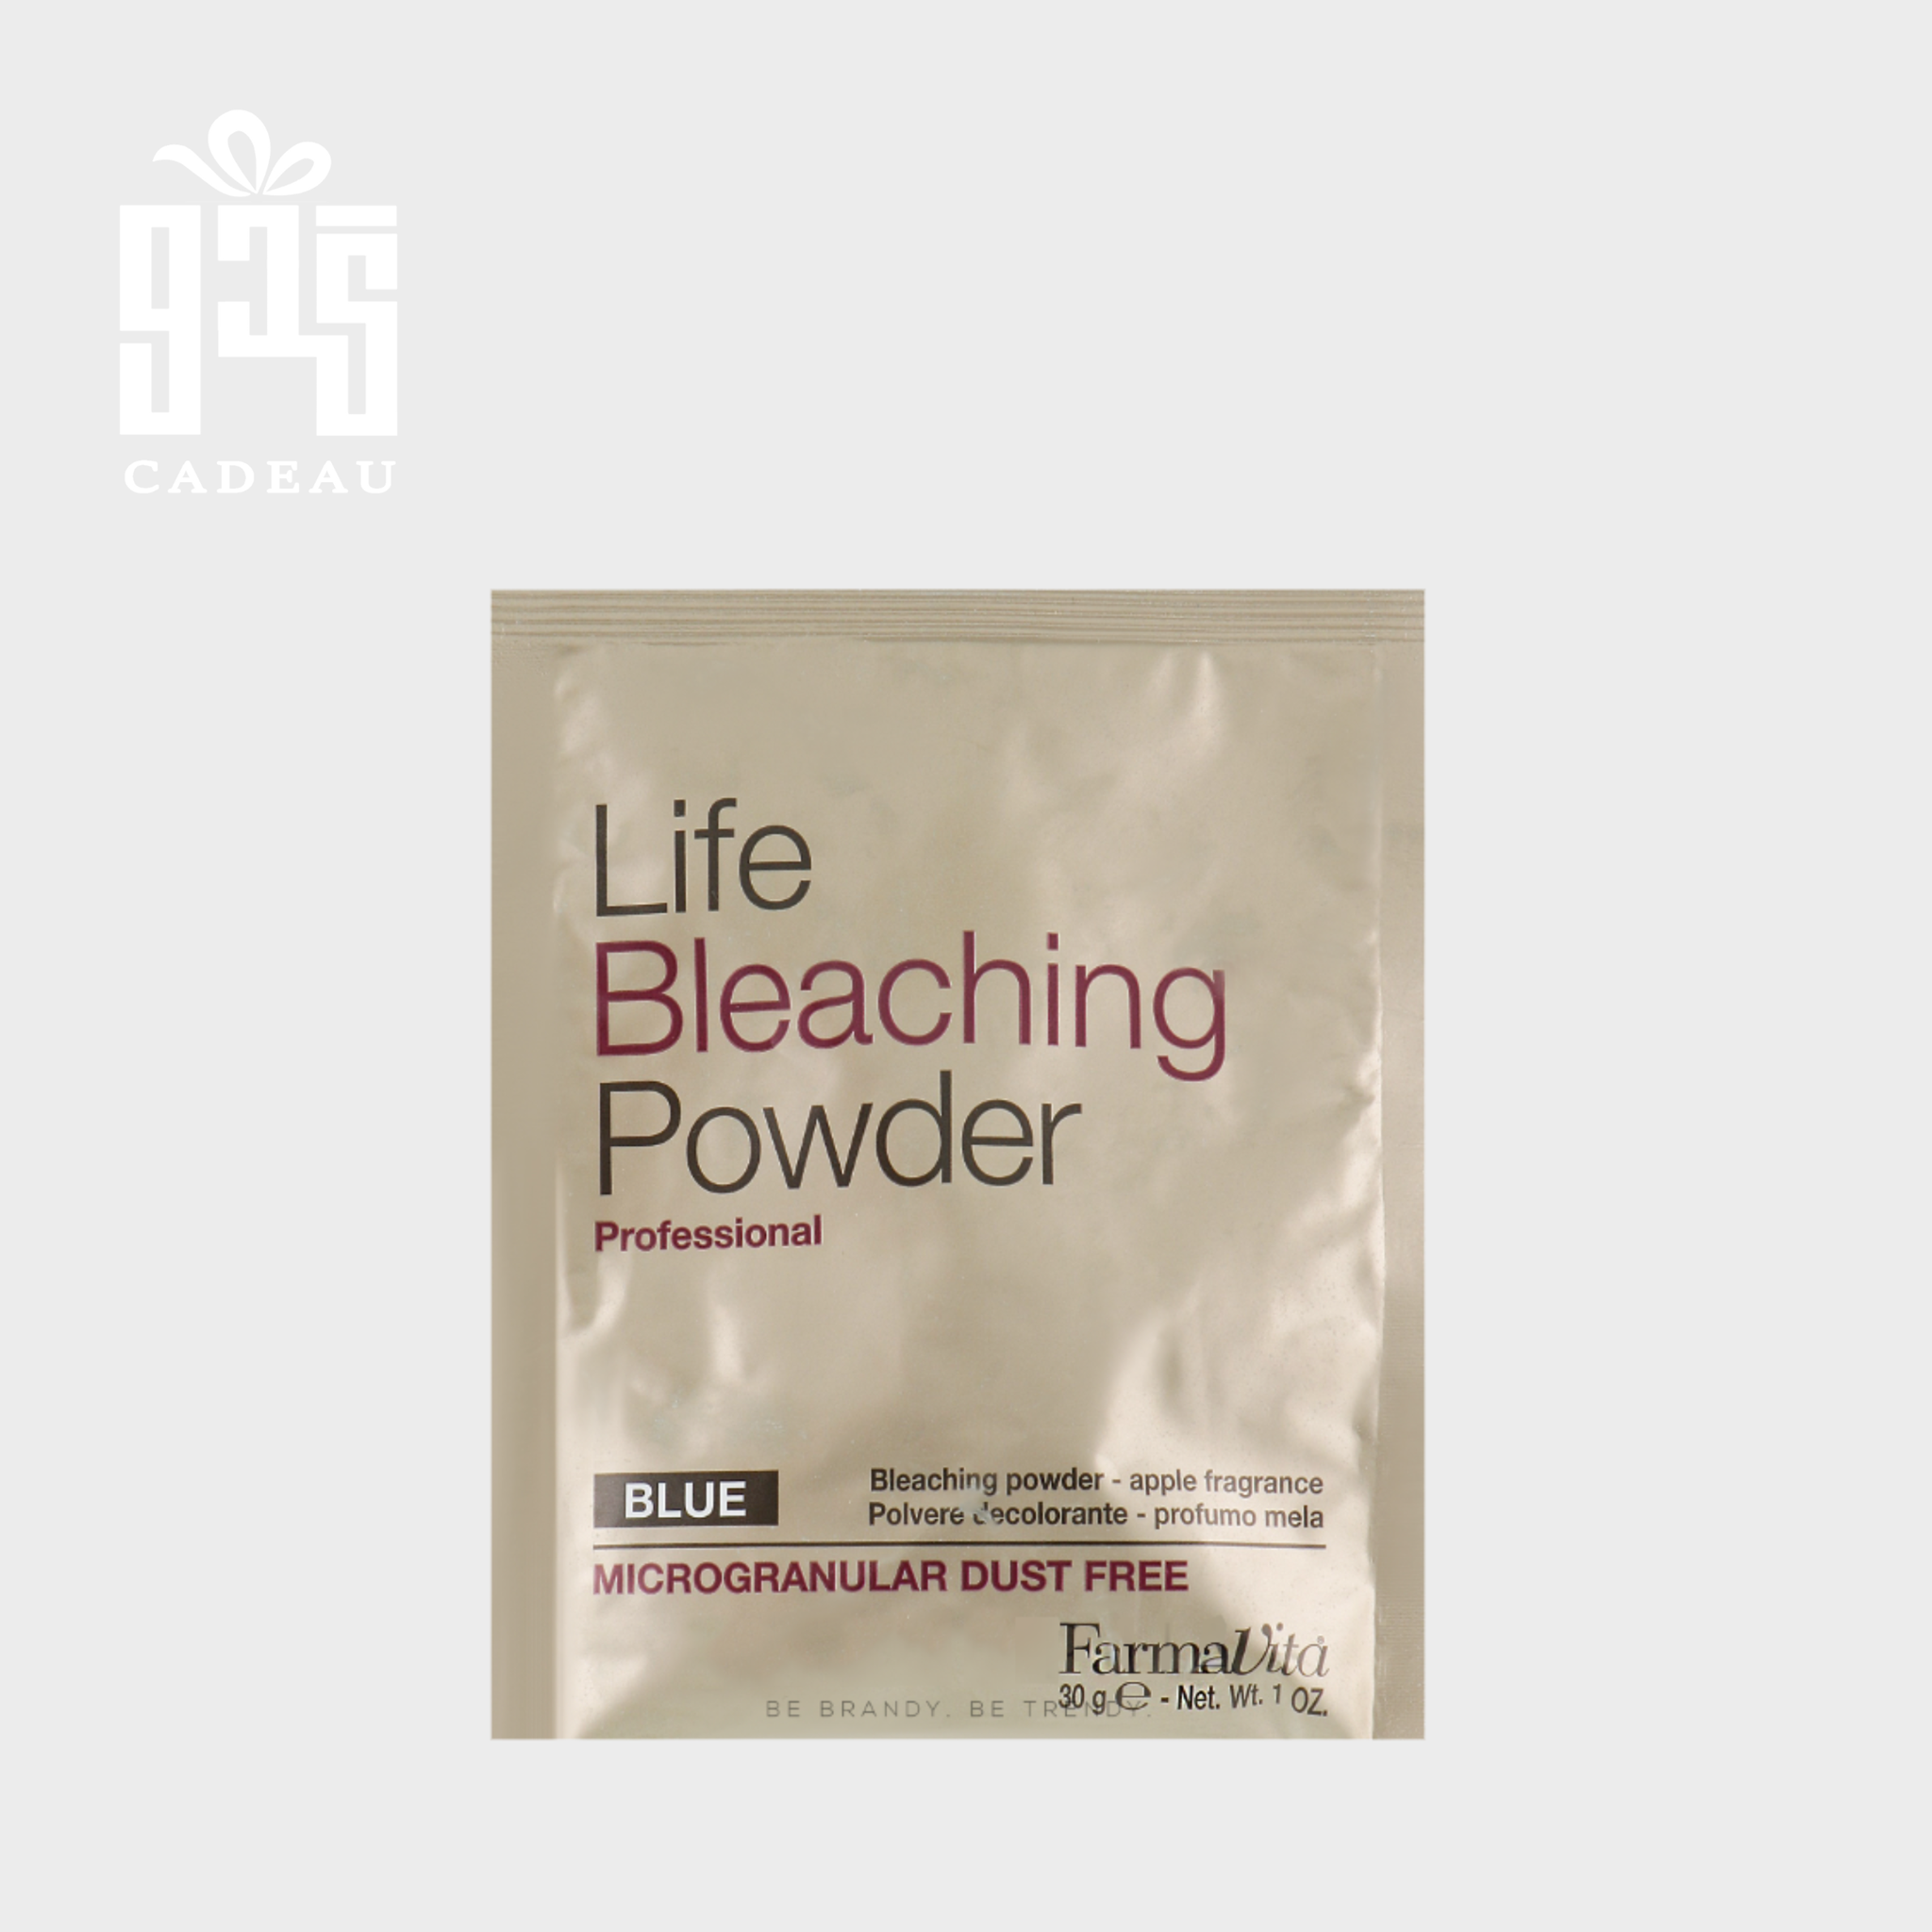 صورة المنتج بودرة Life Bleaching powder  لتبيض الشعر